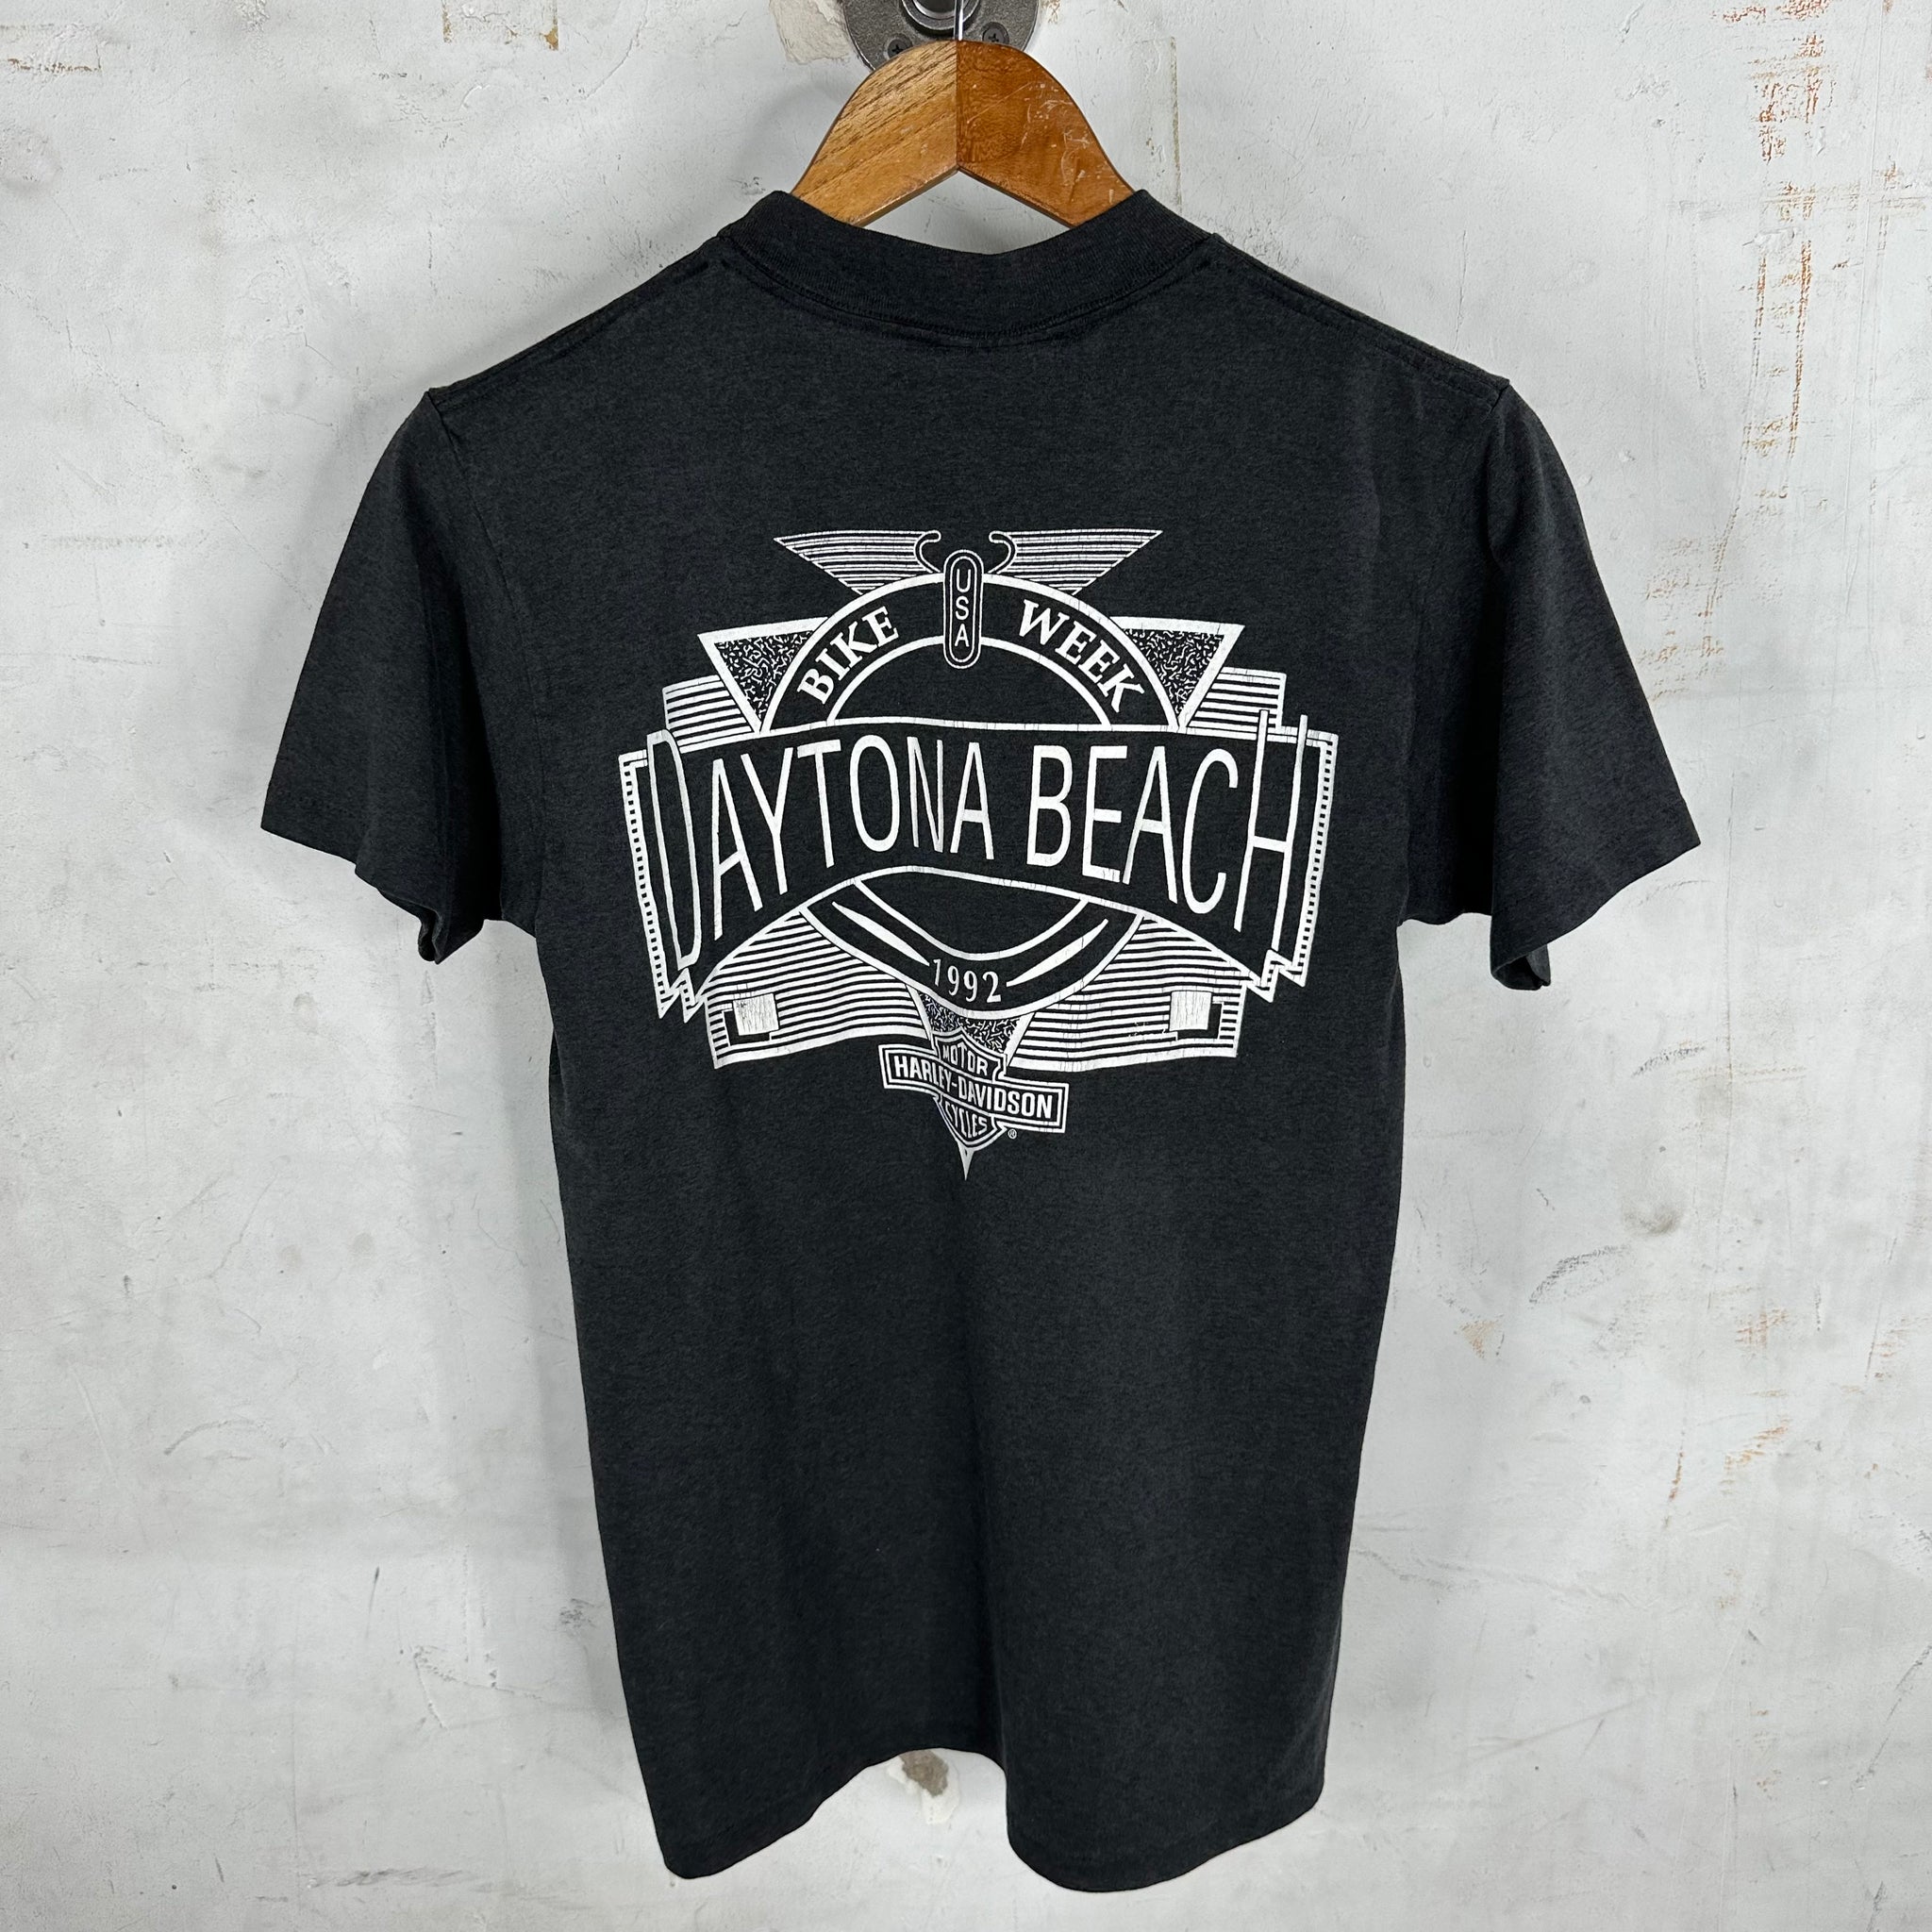 Harley Davidson Daytona Bike Week T-Shirt